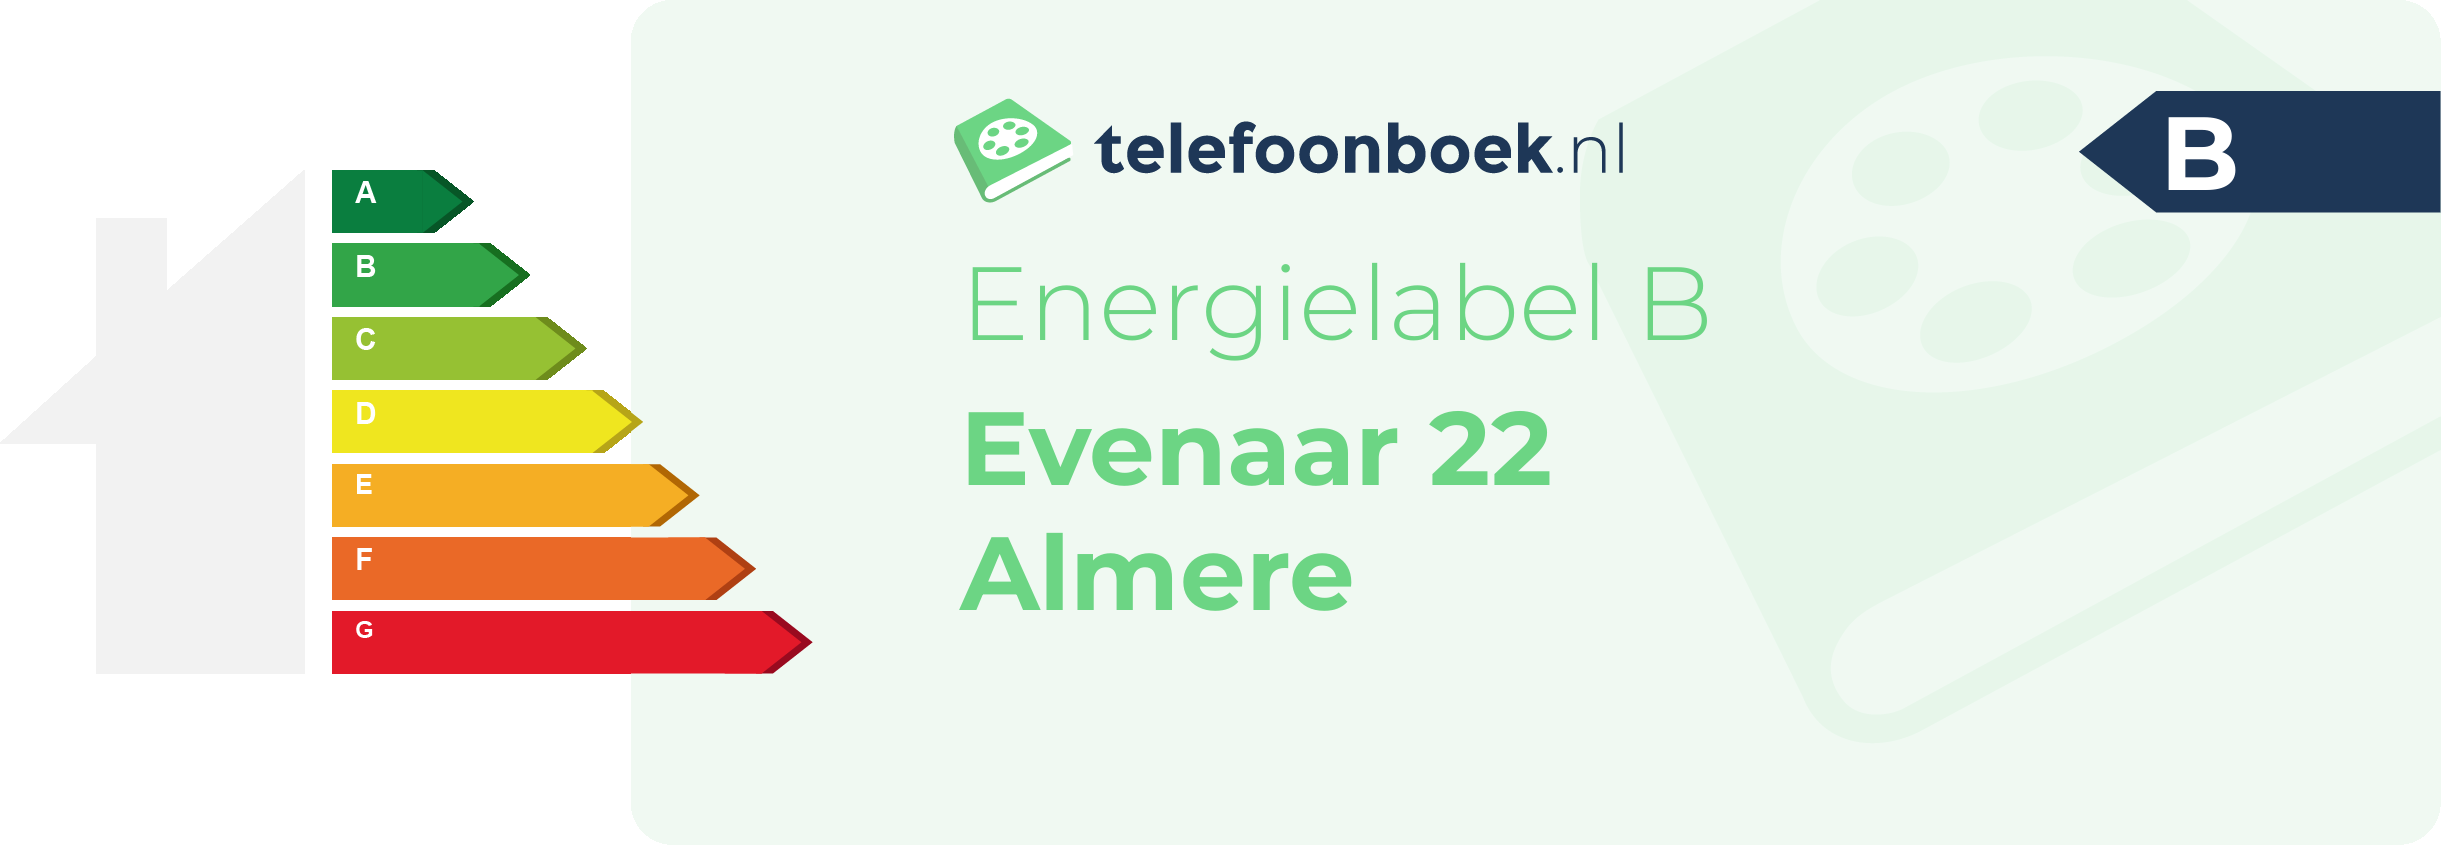 Energielabel Evenaar 22 Almere